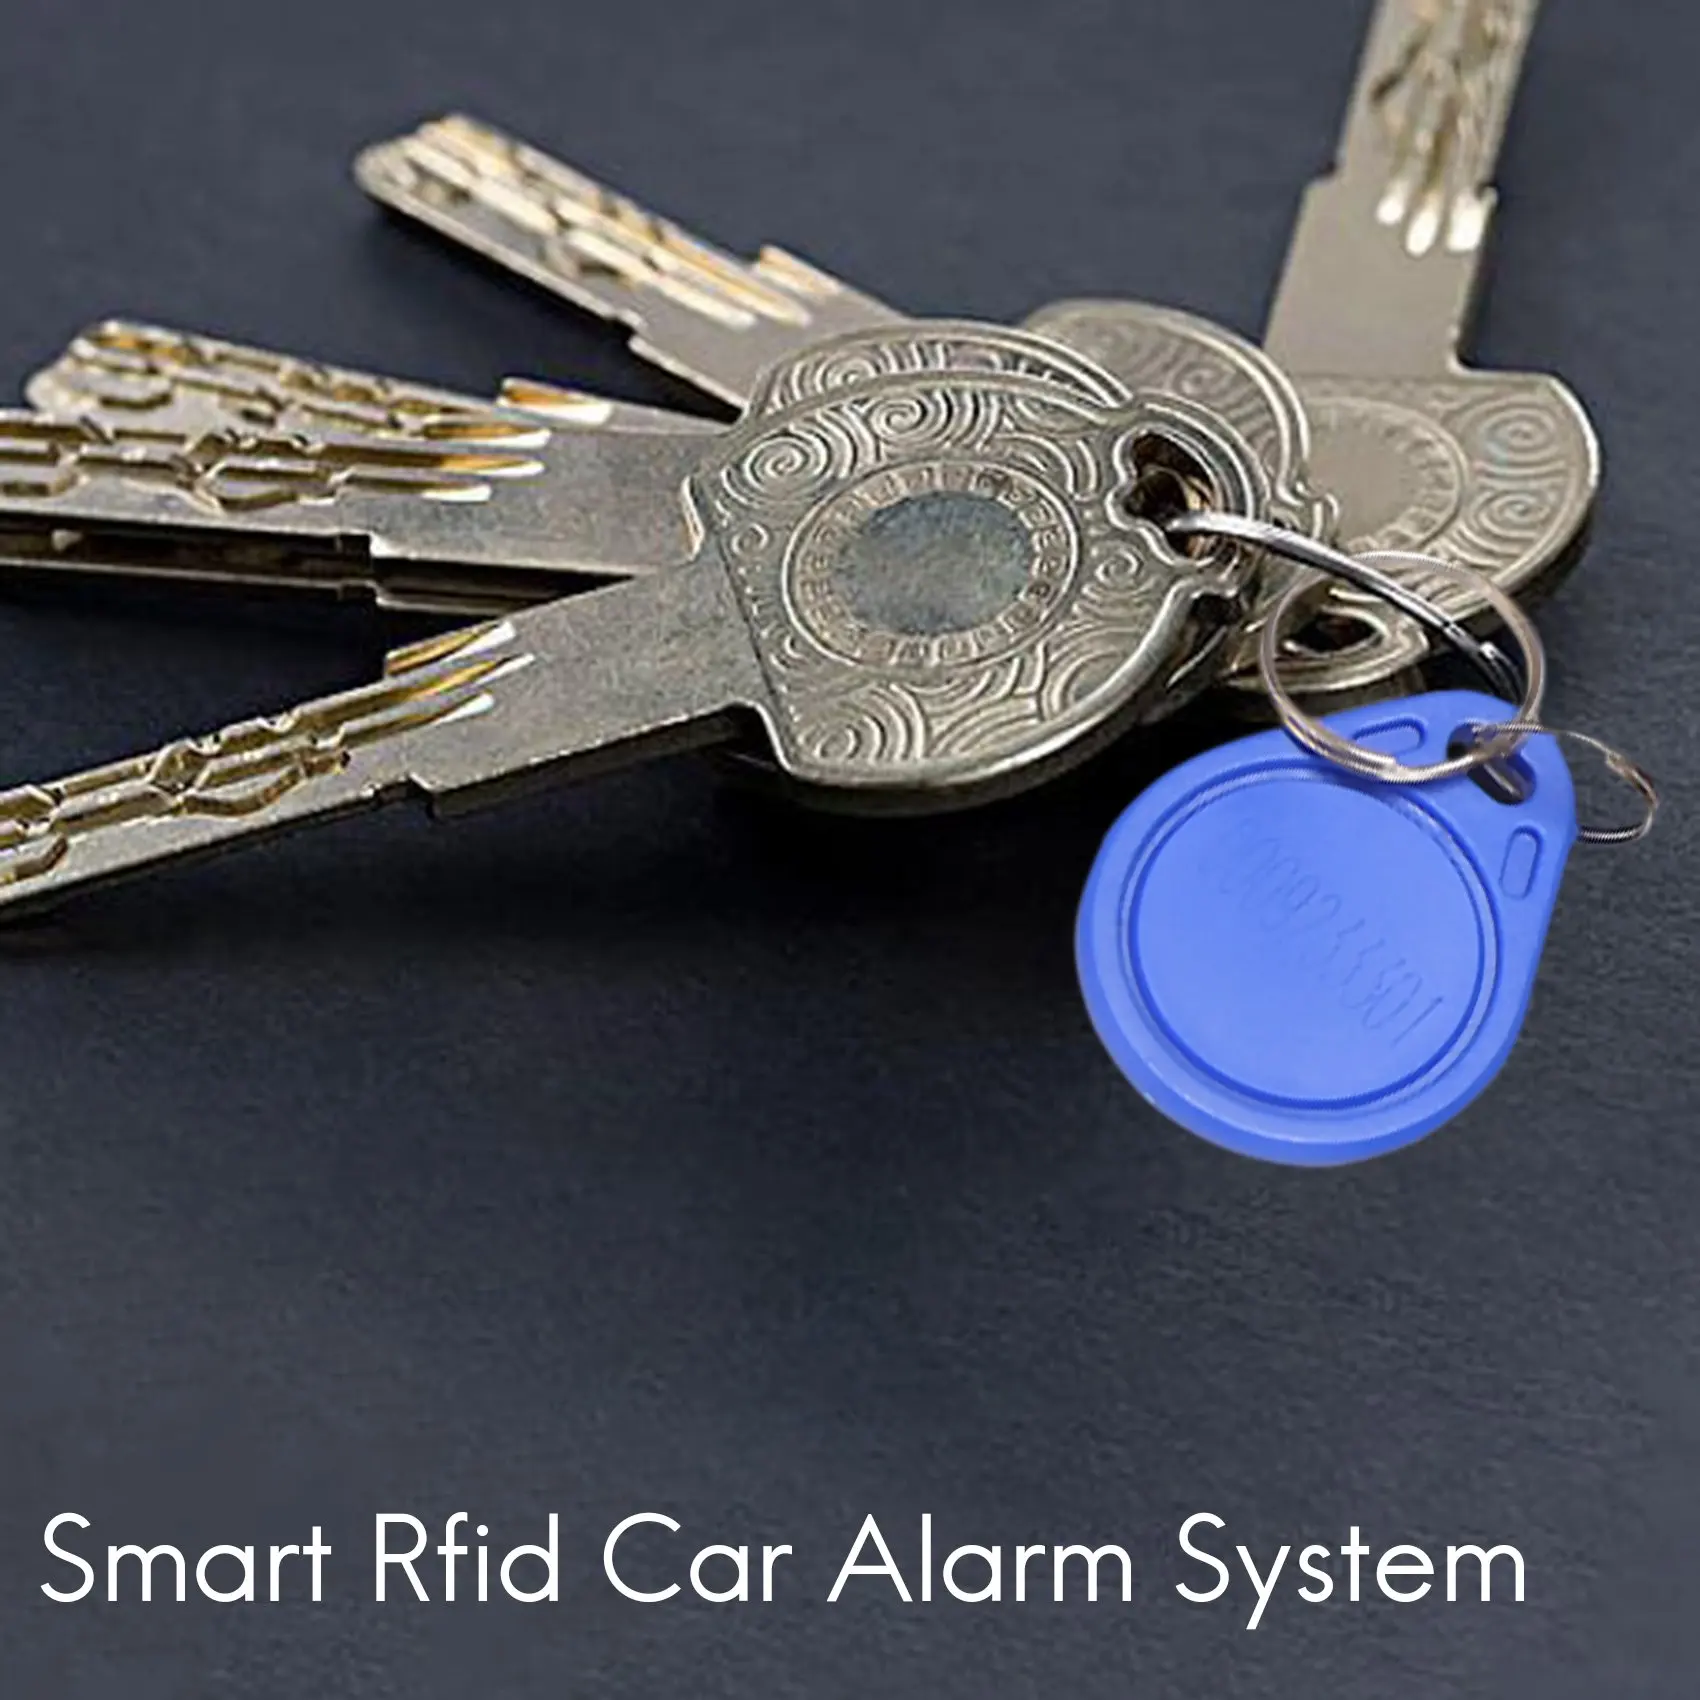 חכם RFID מערכת אזעקה לרכב לדחוף מנוע להתחיל כפתור עצירה מנעול ההצתה אימובילייזר עם Keyless מרחוק לך מערכת כניסה 12V . ' - ' . 3